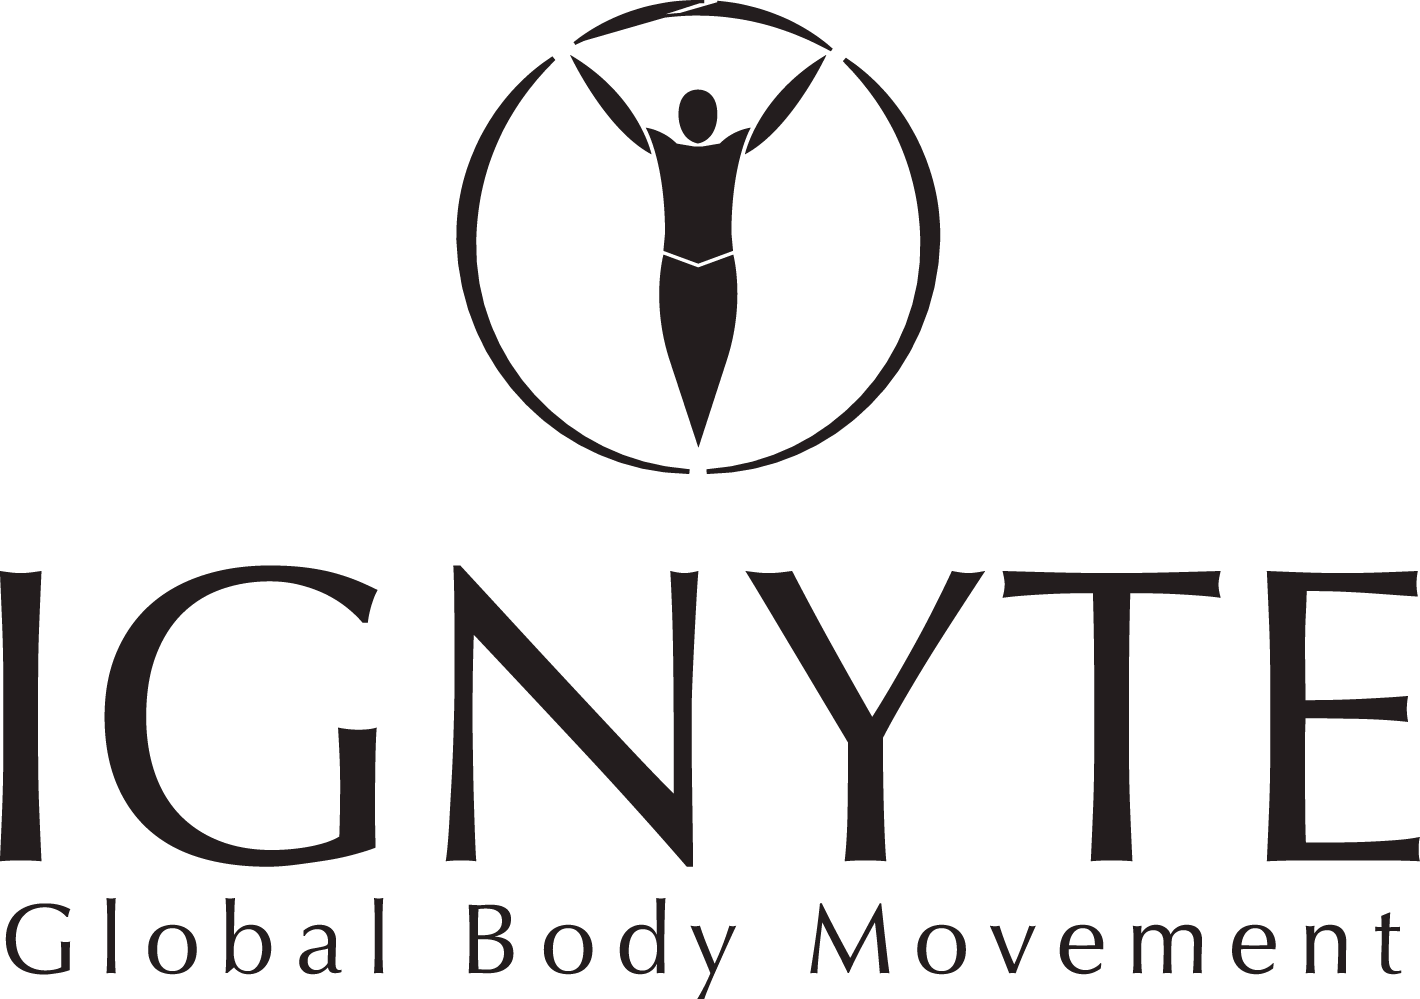 Ignyte Global Body Movement